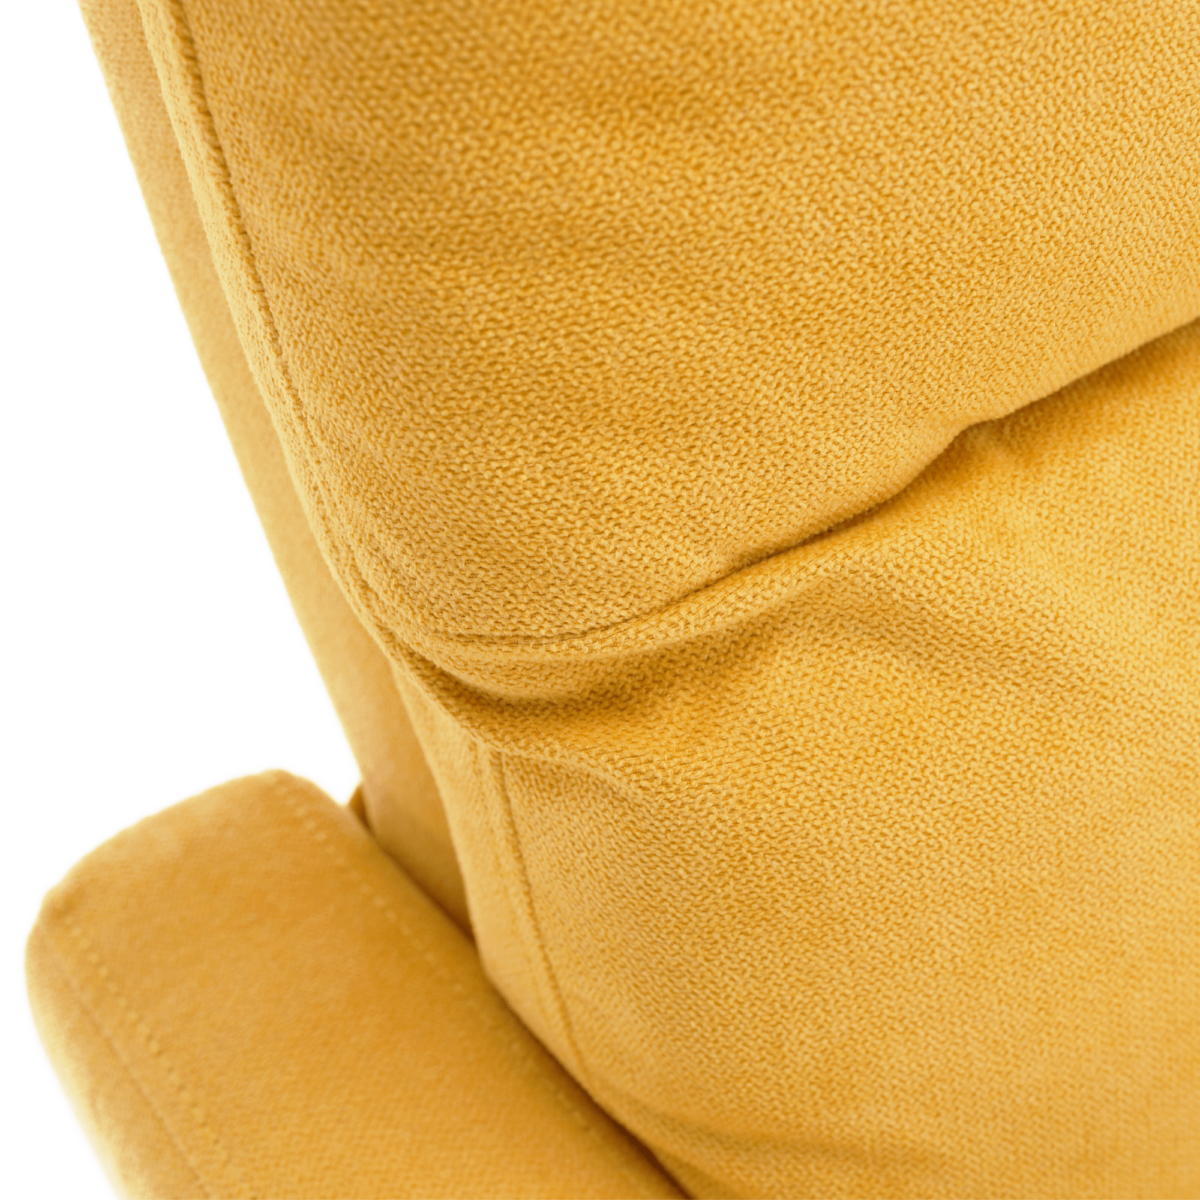 Relaxáló fotel, sárga, TURNER